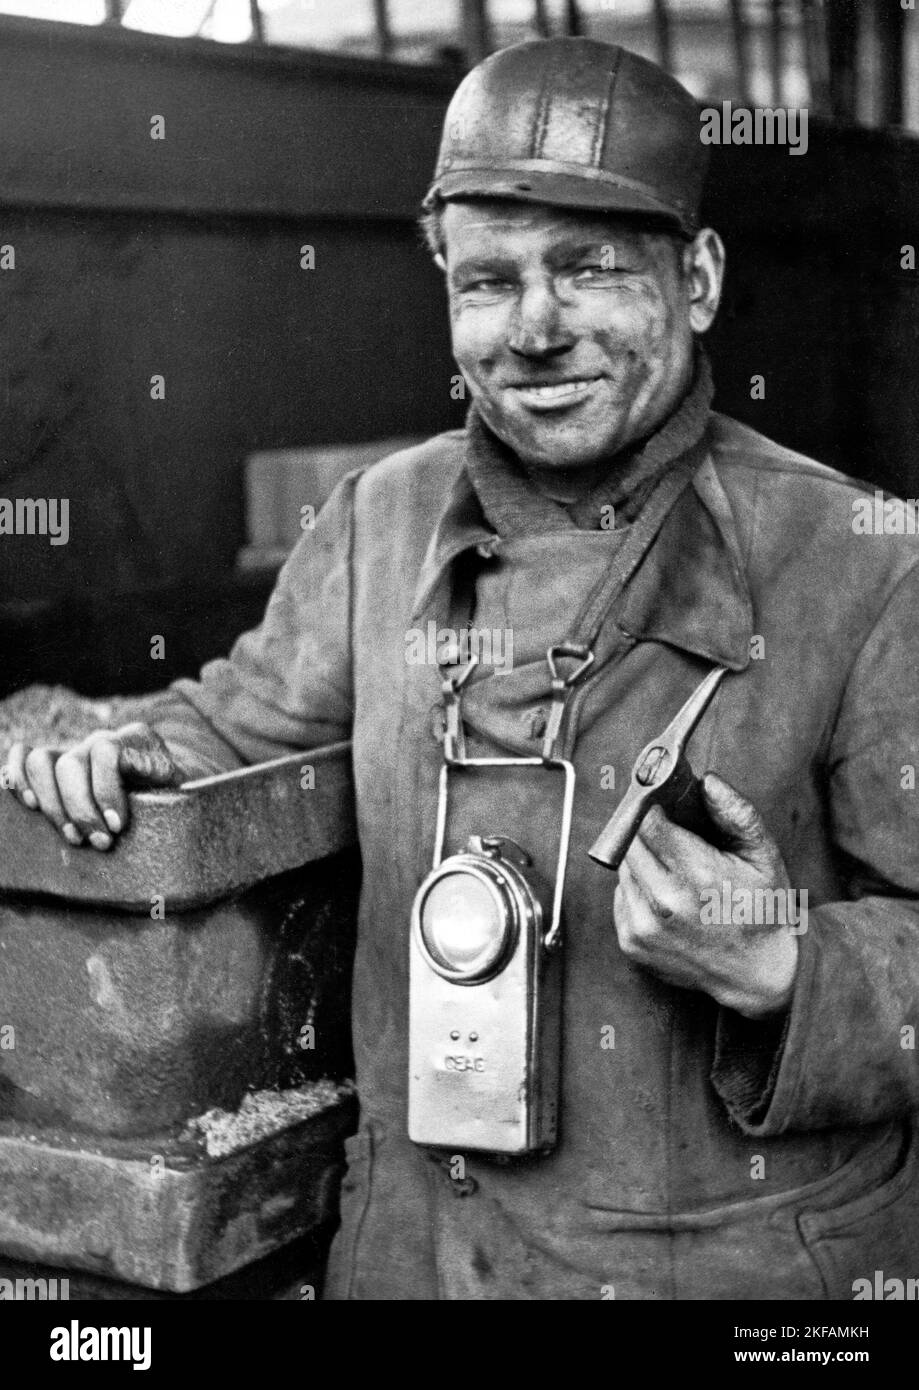 Vorarbeiter Bergmann eines Bergwerks im Ruhrgebiet, Deutschland um 1950. Capocantana minatore di una miniera nella regione della Ruhr, Germania intorno al 1950. Foto Stock